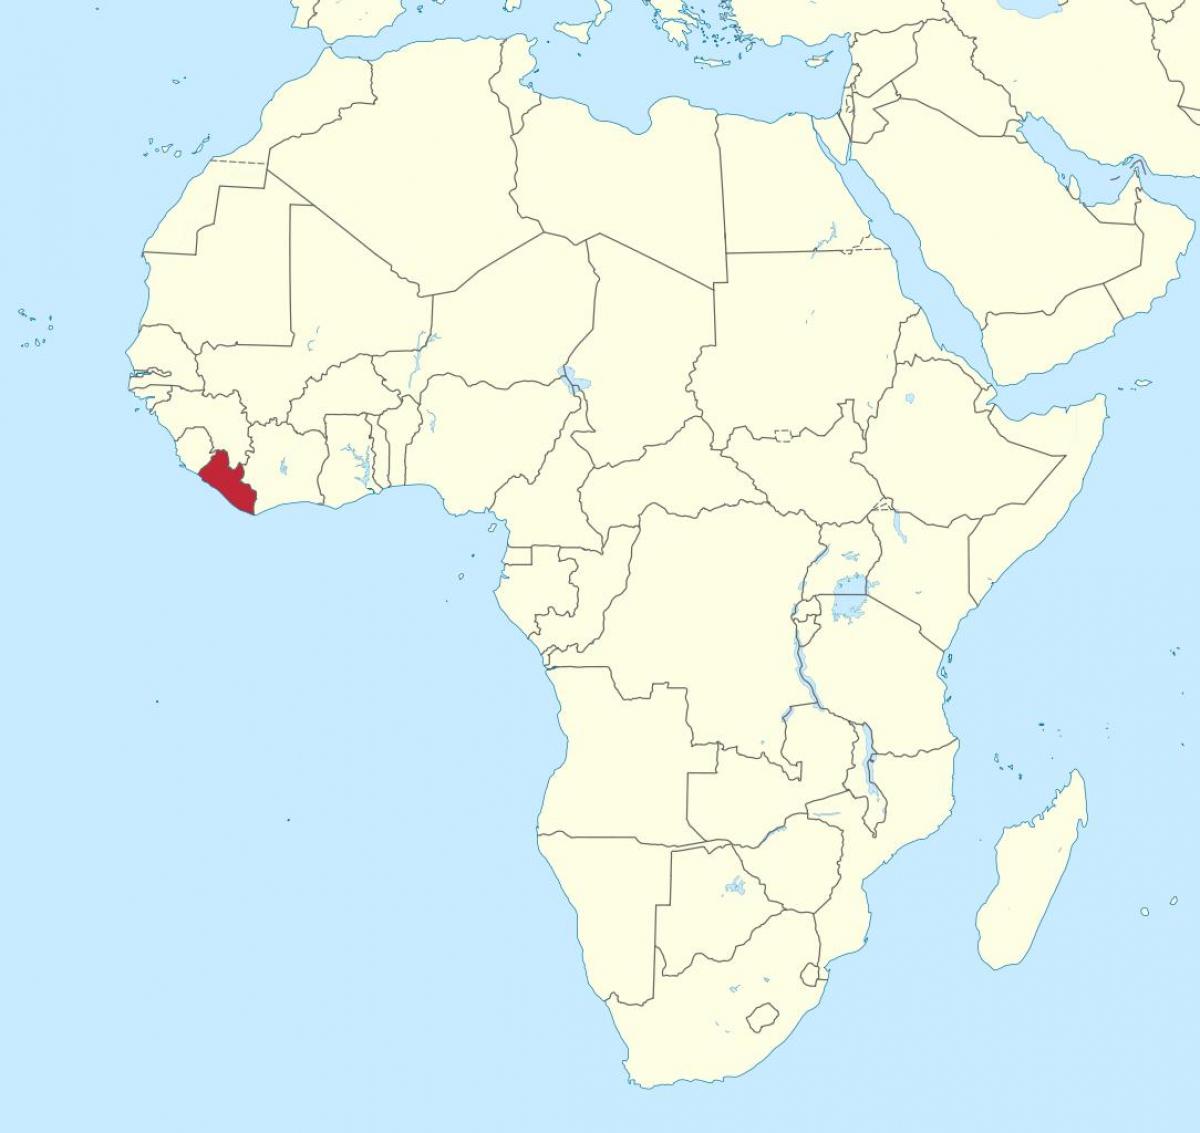 মানচিত্র, লাইবেরিয়া আফ্রিকা